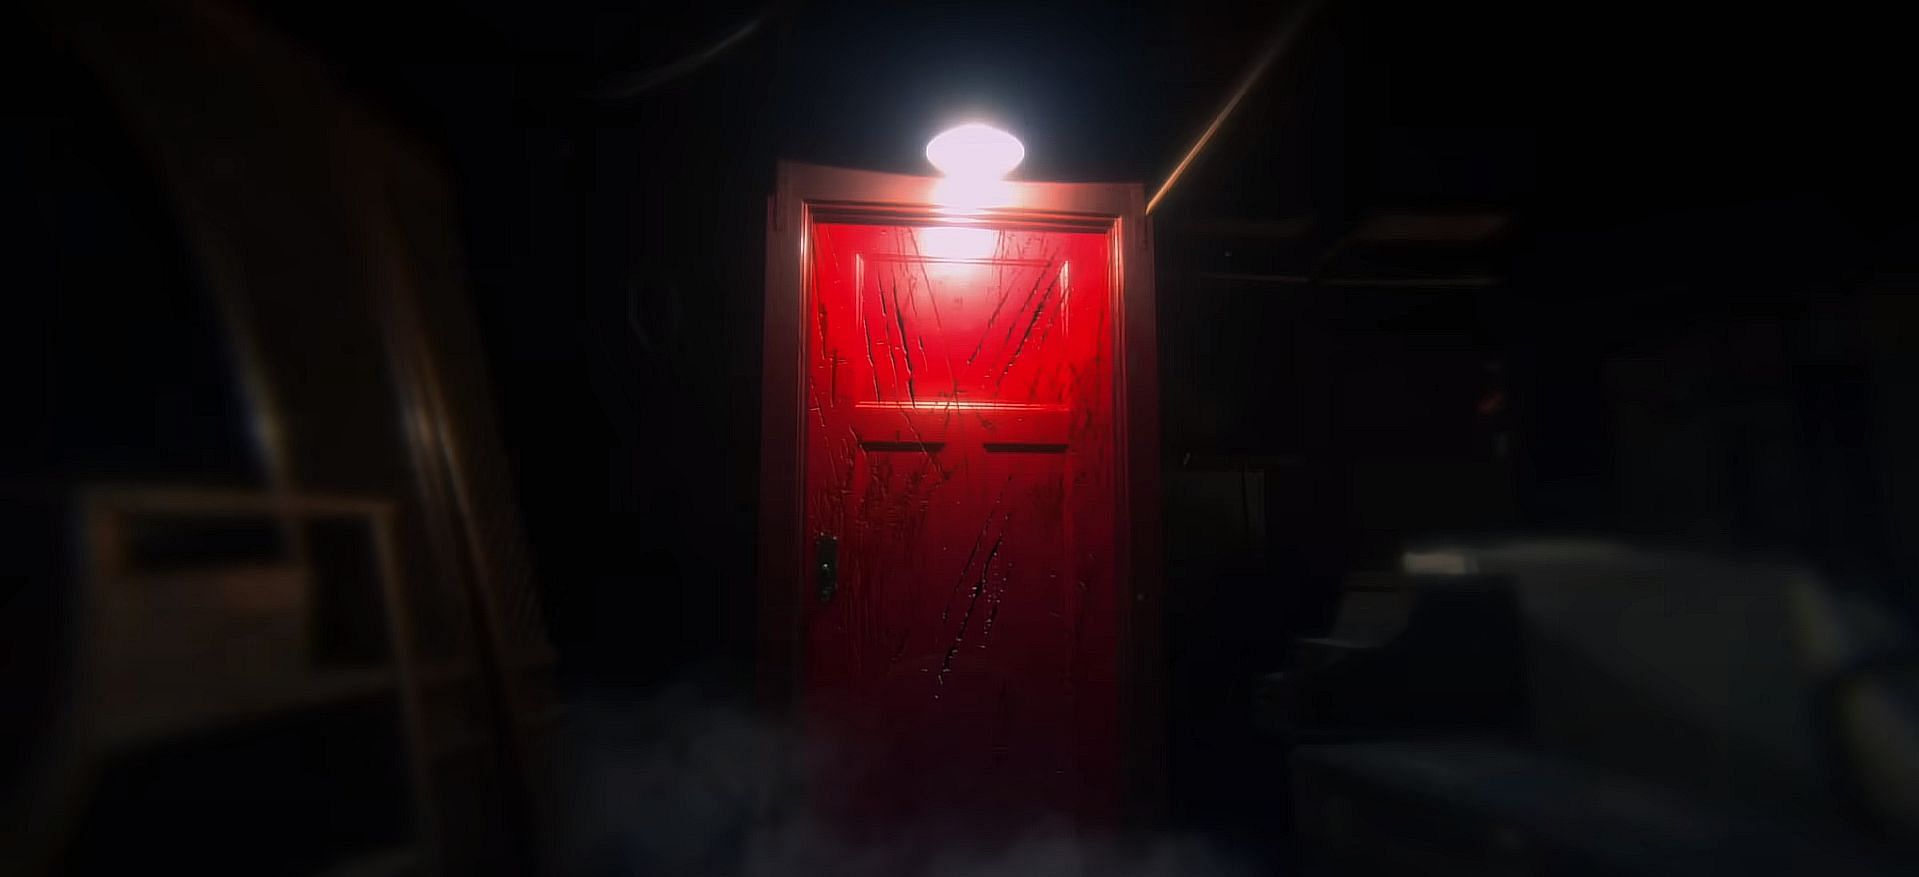 Insidious: The Red Door, Insidious Wiki